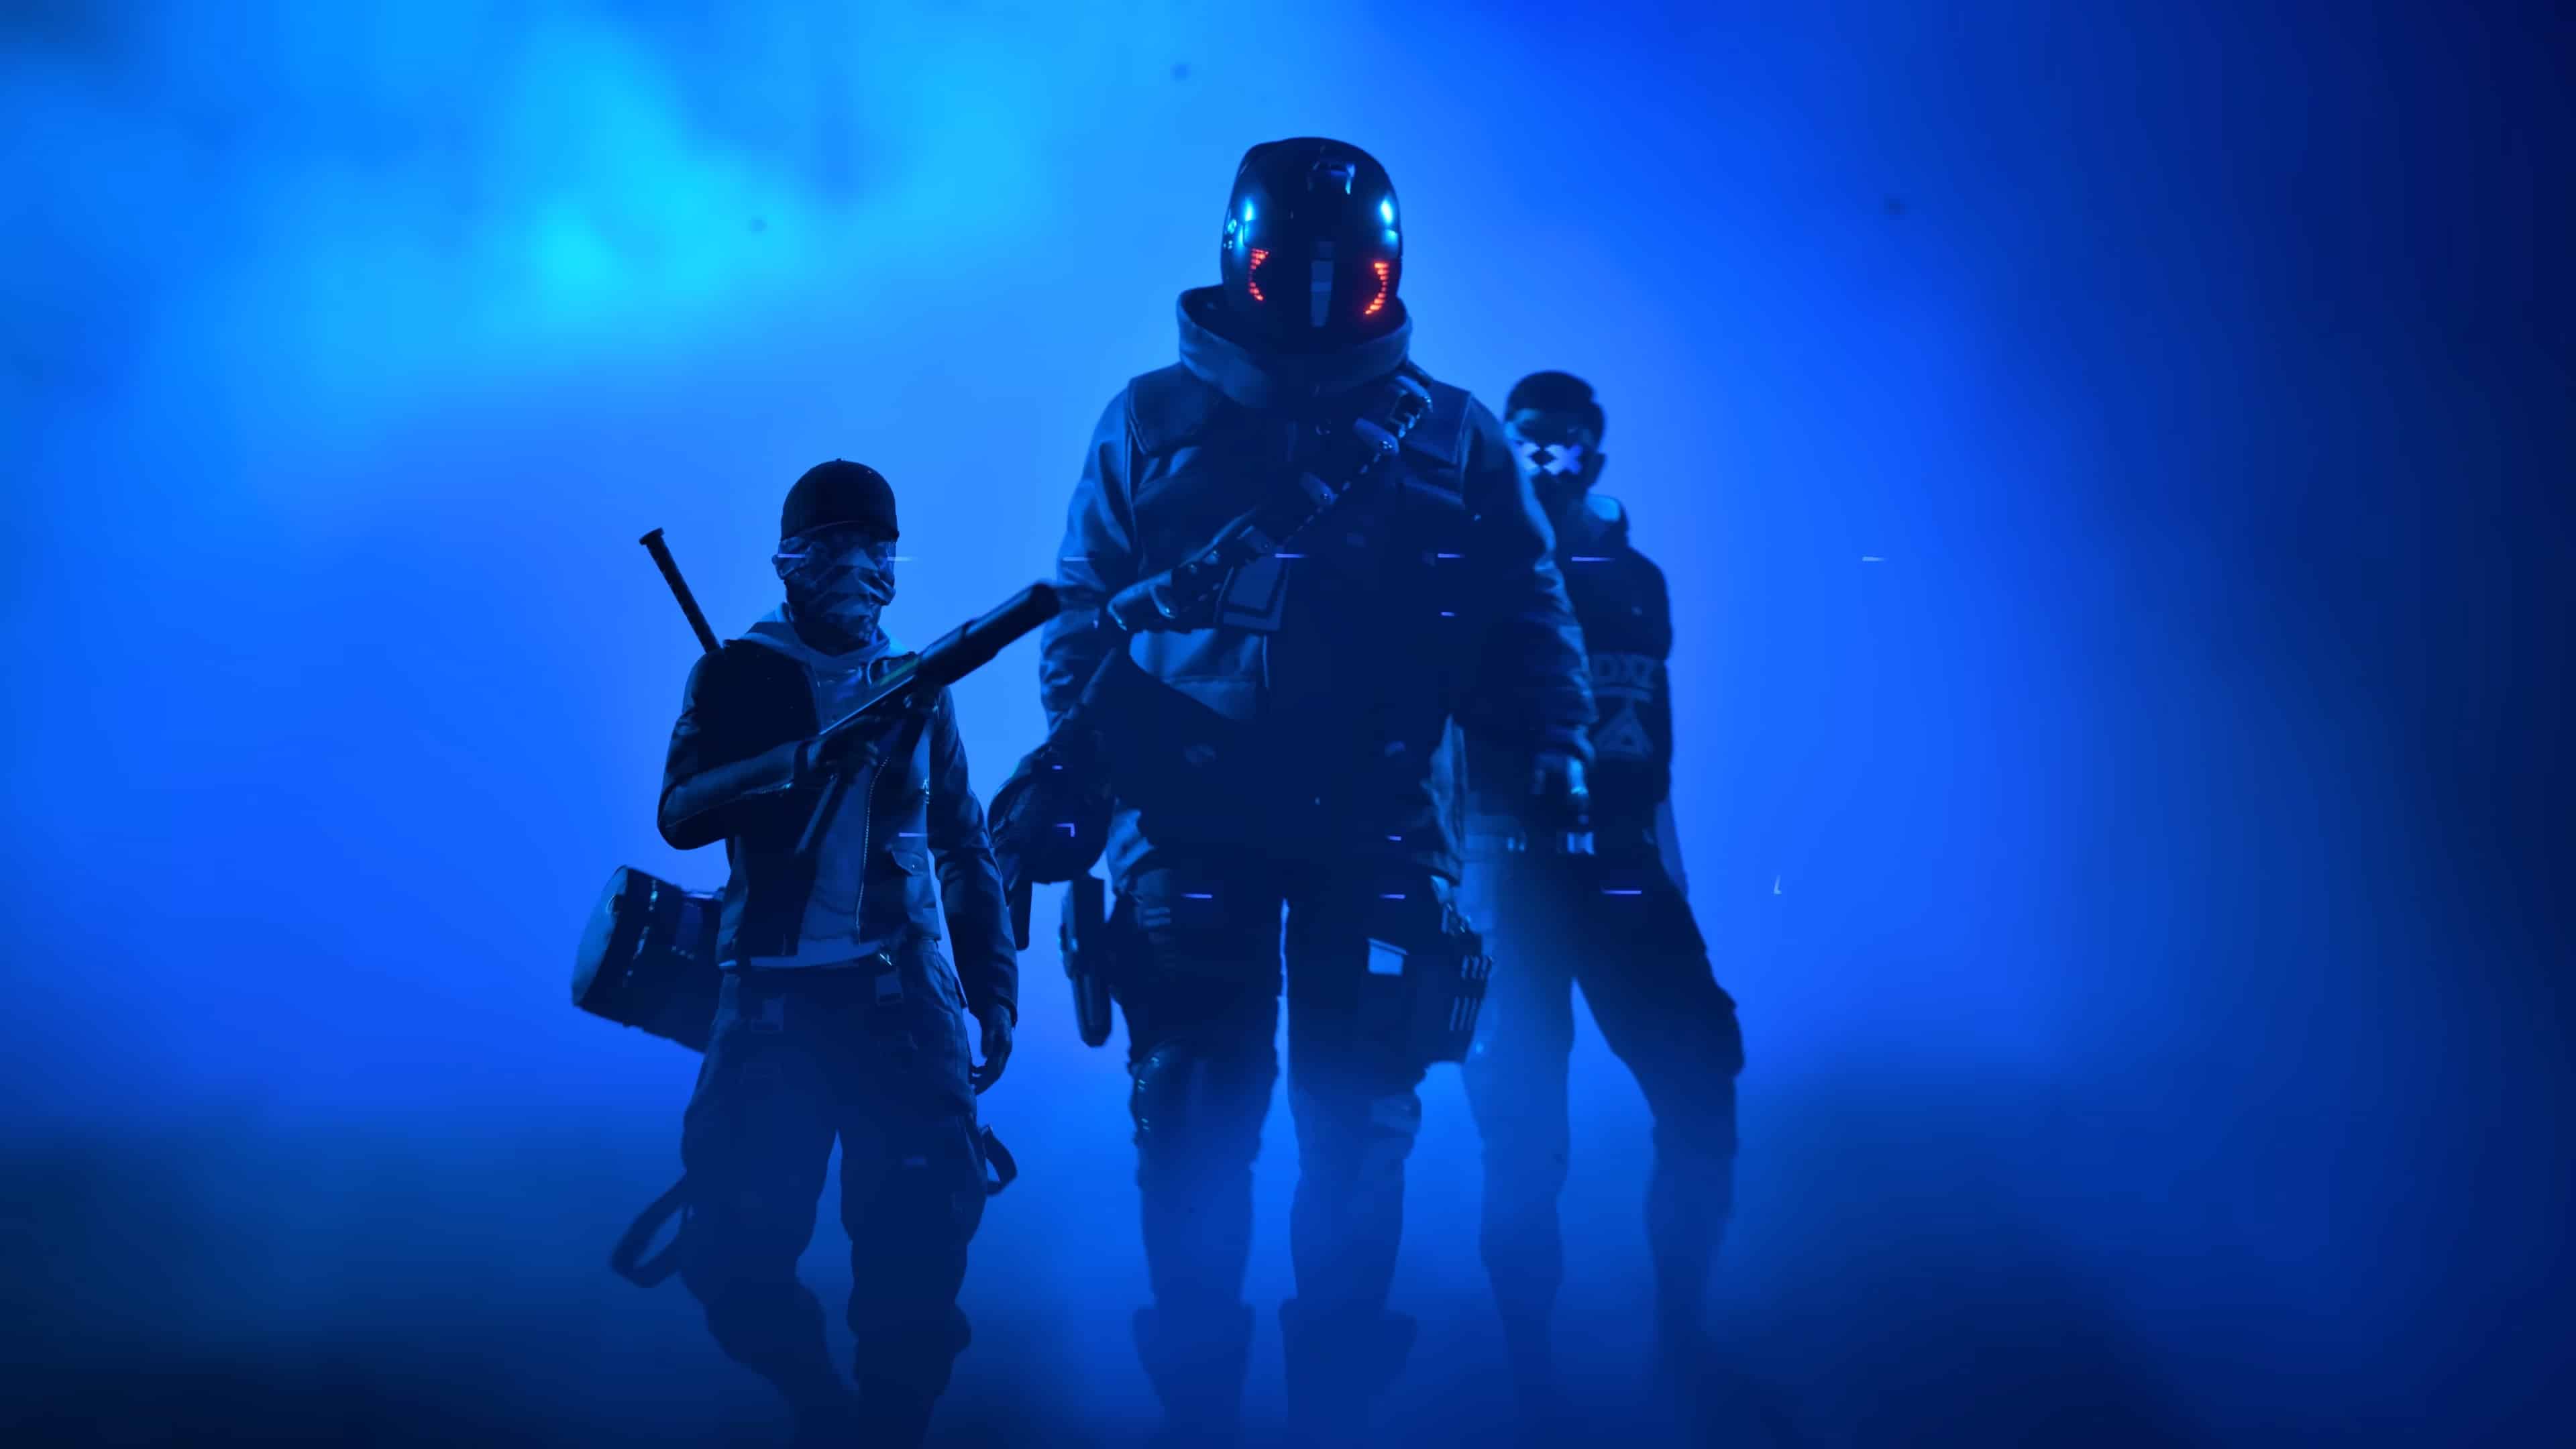 The Finals Season 2 start date: A team of players walk towards the camera through a blue haze.